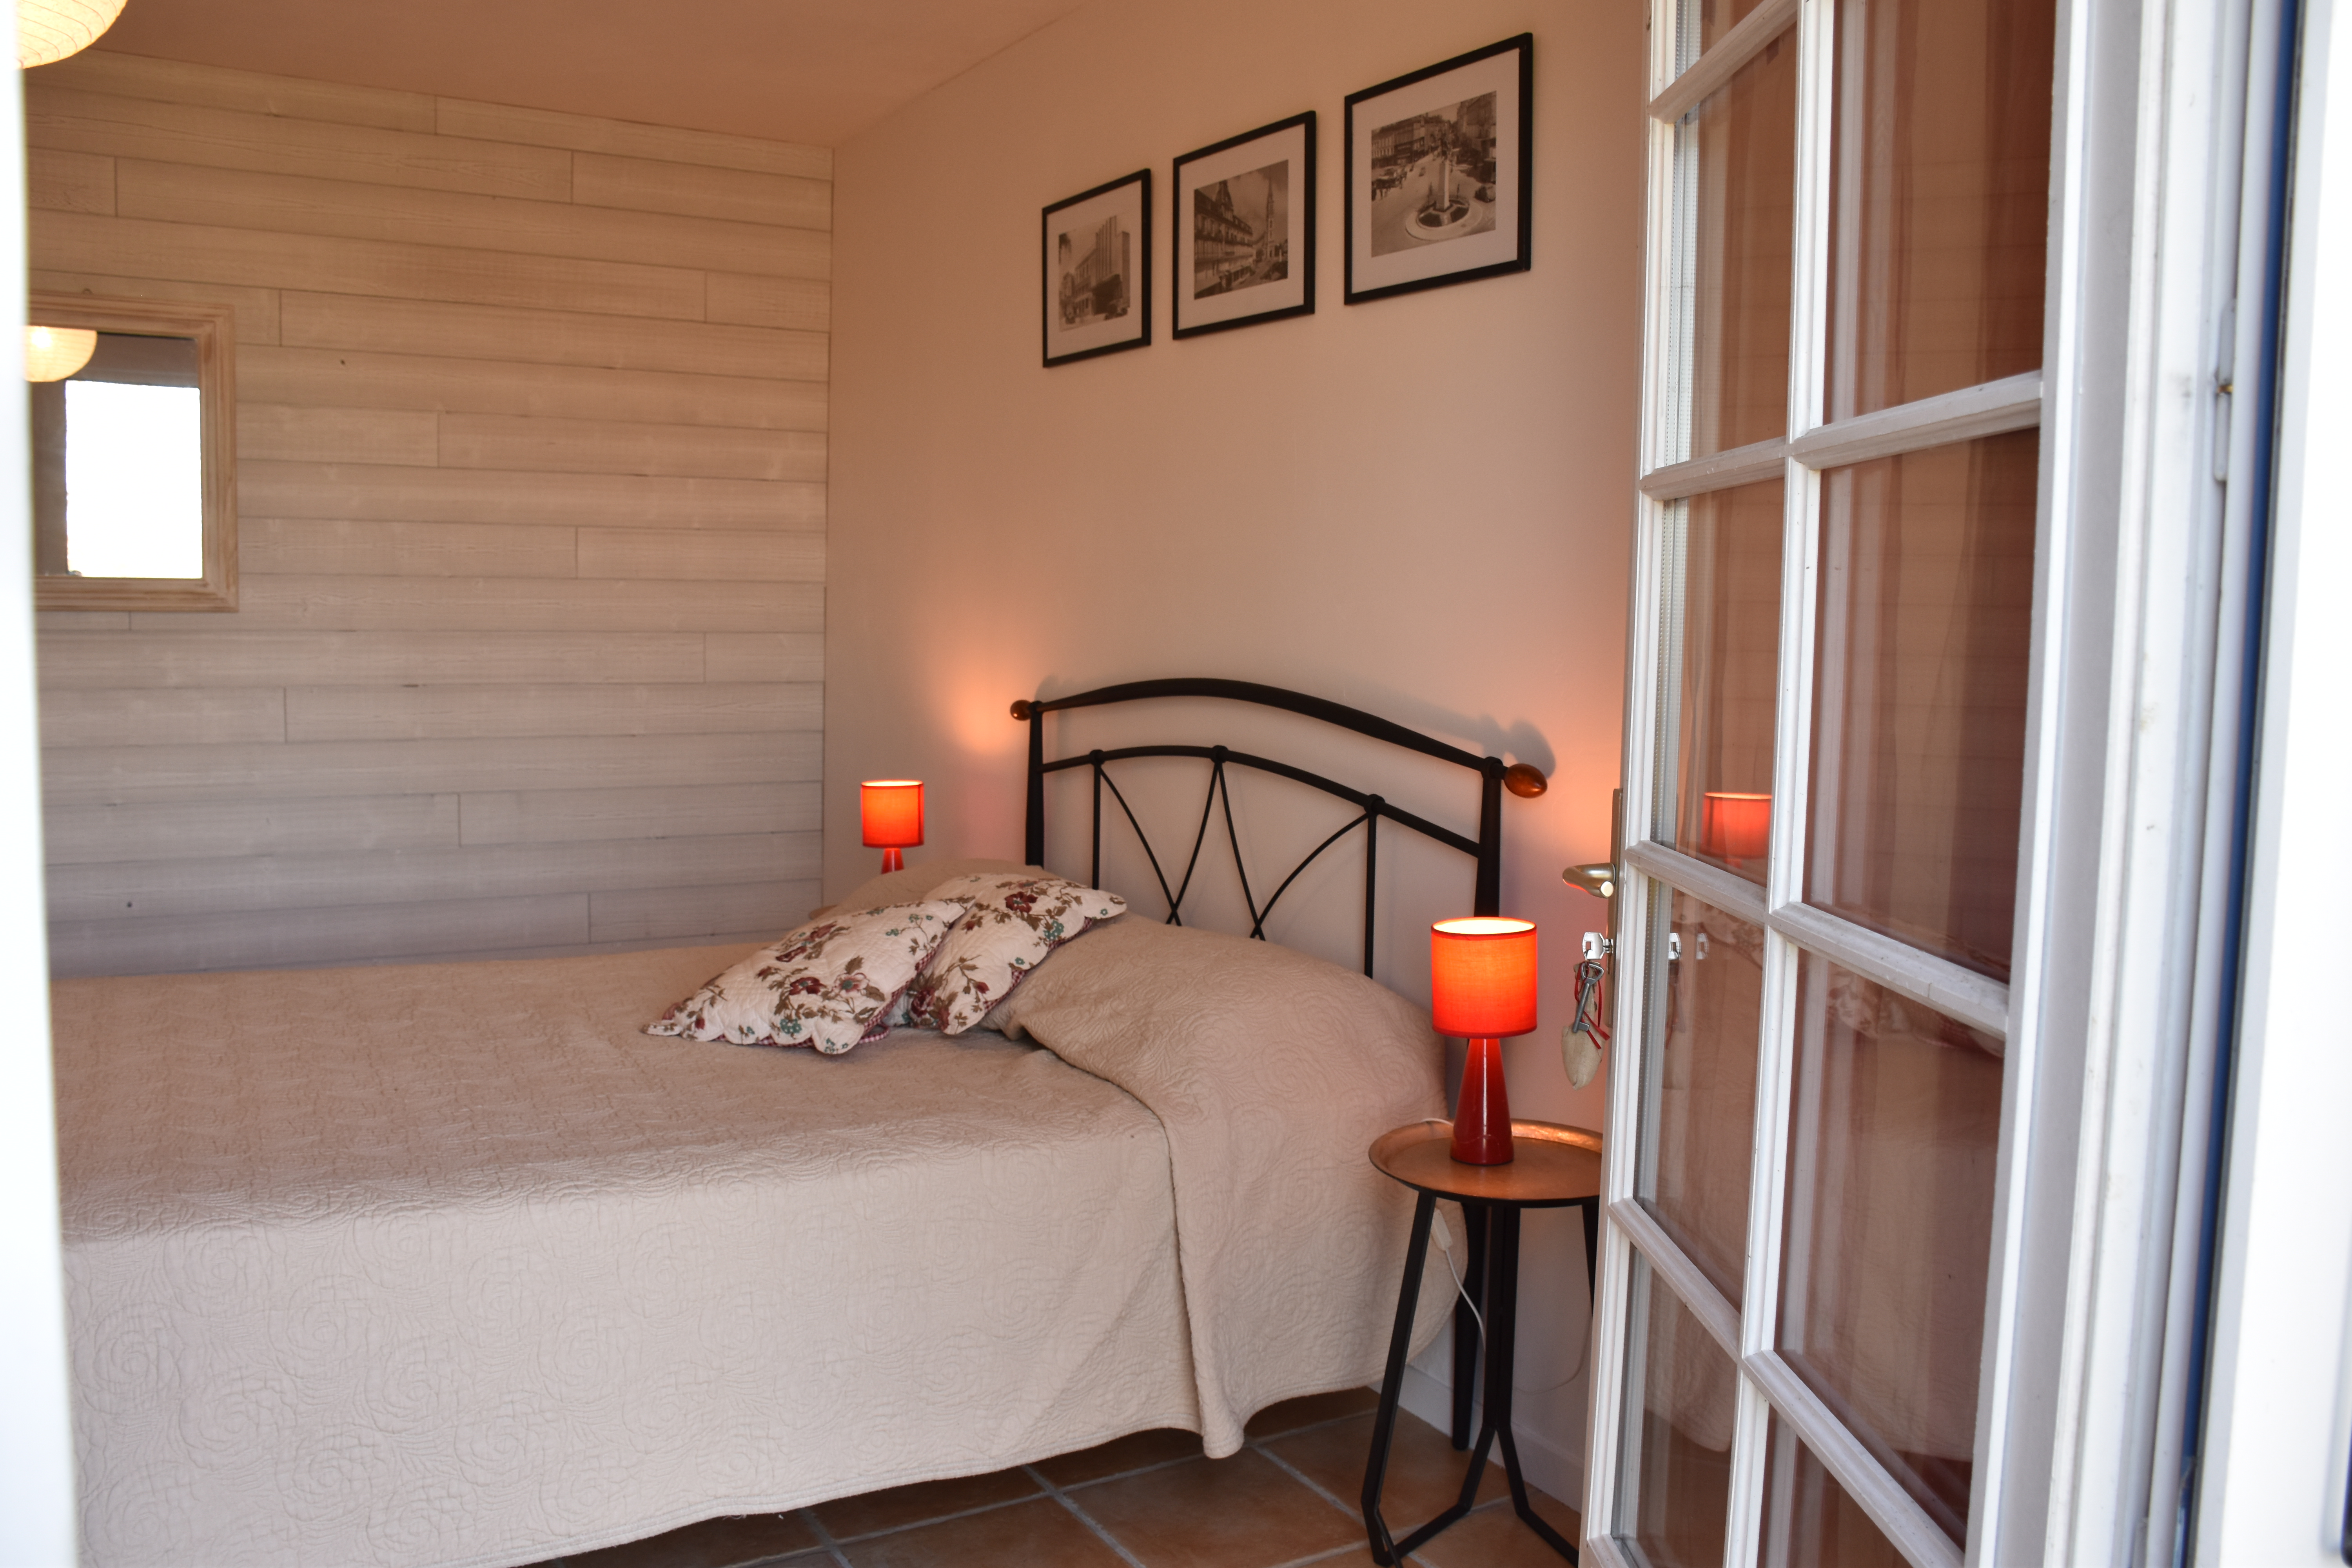 Chambre double avec lit 140 du gite Les Iris pour 2 personnes près de Bergerac en Dordogne